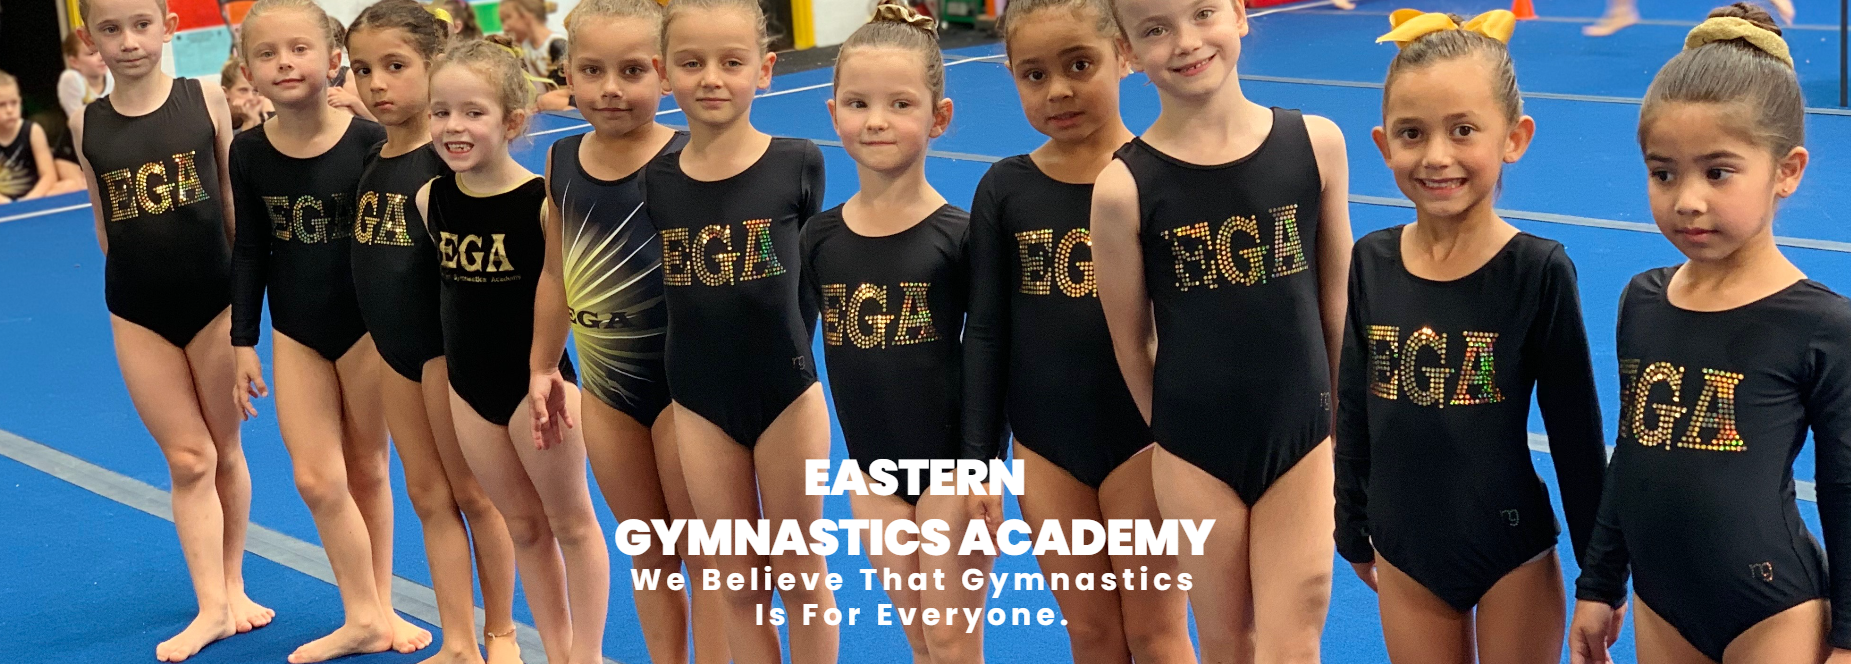 Eastern Gymnastics Academy